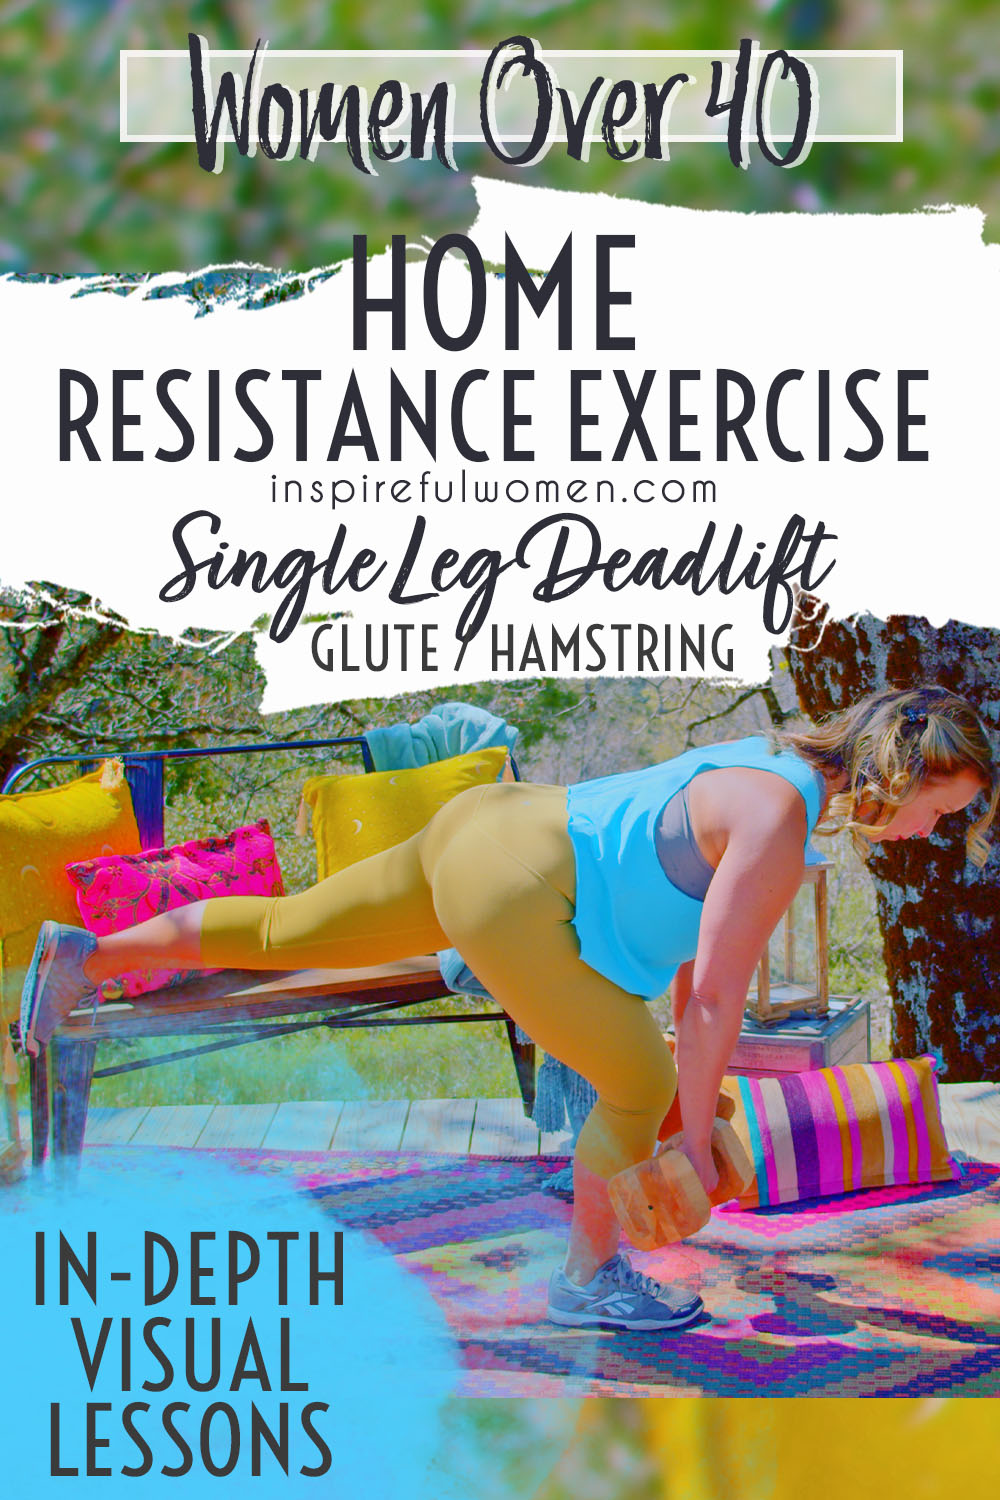 one-leg-deadlift-alternative-dumbbell-glute-hamstrings-lower-body-exercise-women-40+